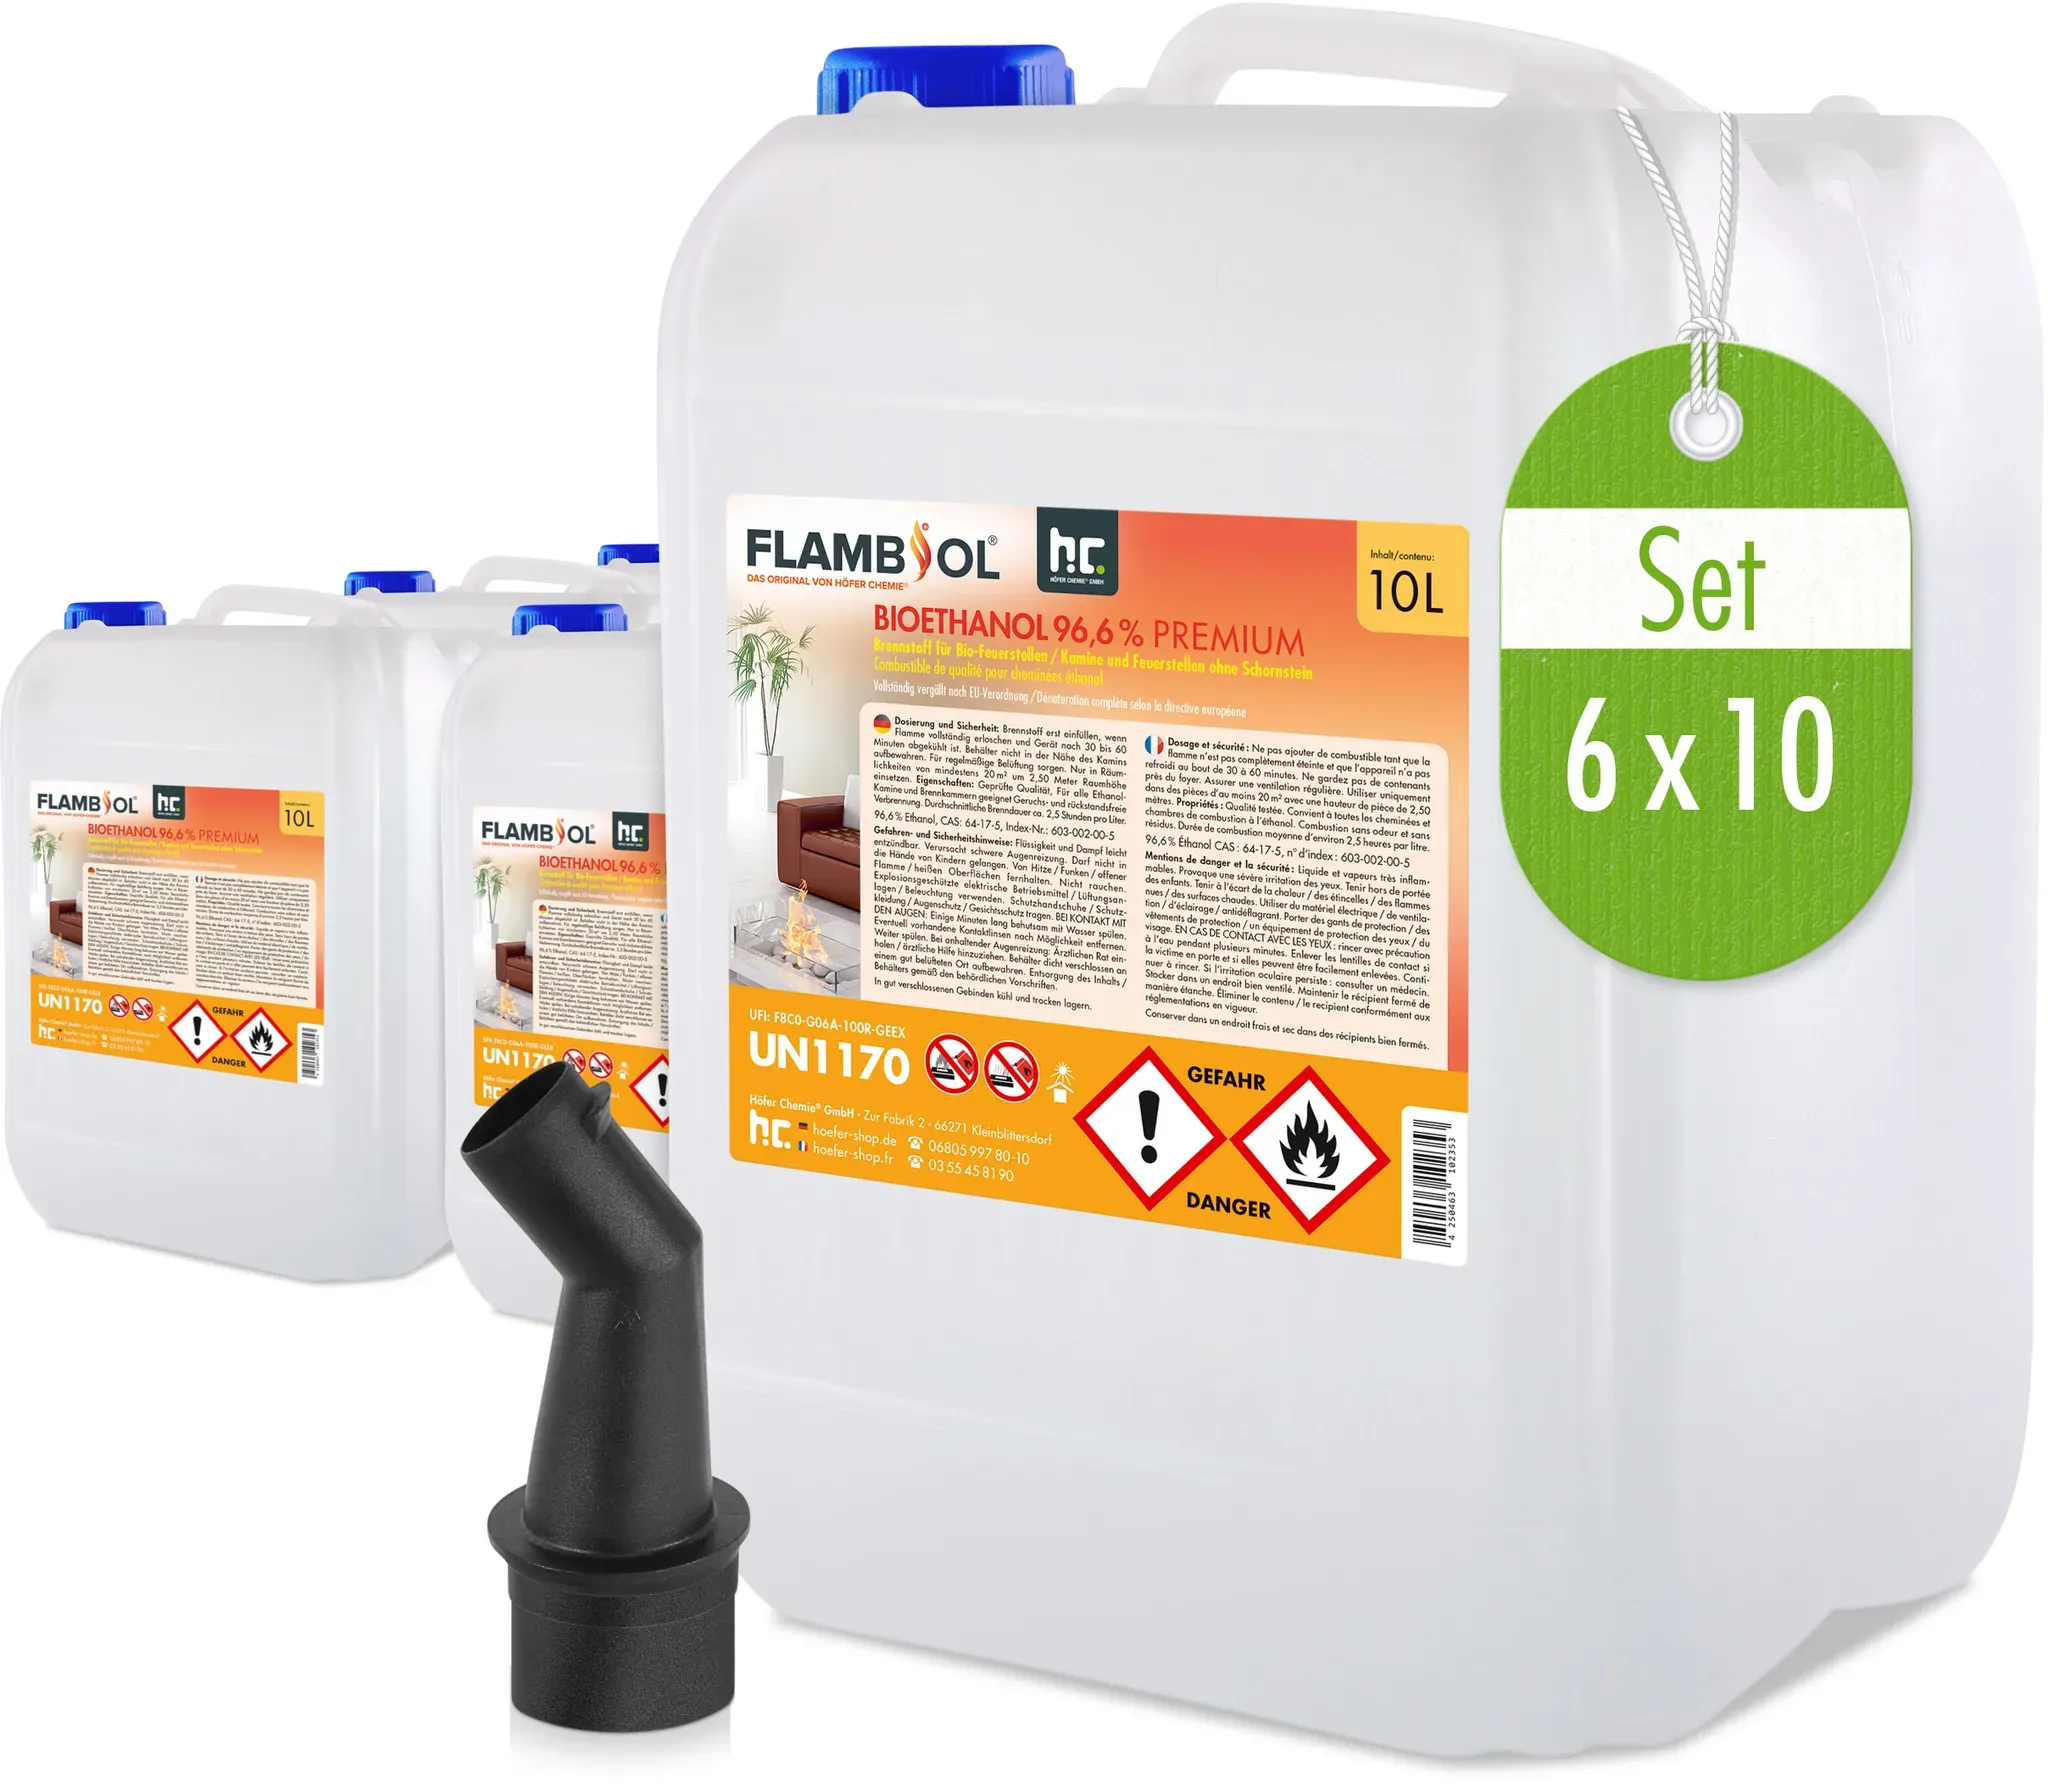 6 x 10 L FLAMBIOL® Bioéthanol 96,6% Premium pour cheminée à éthanol en bidons